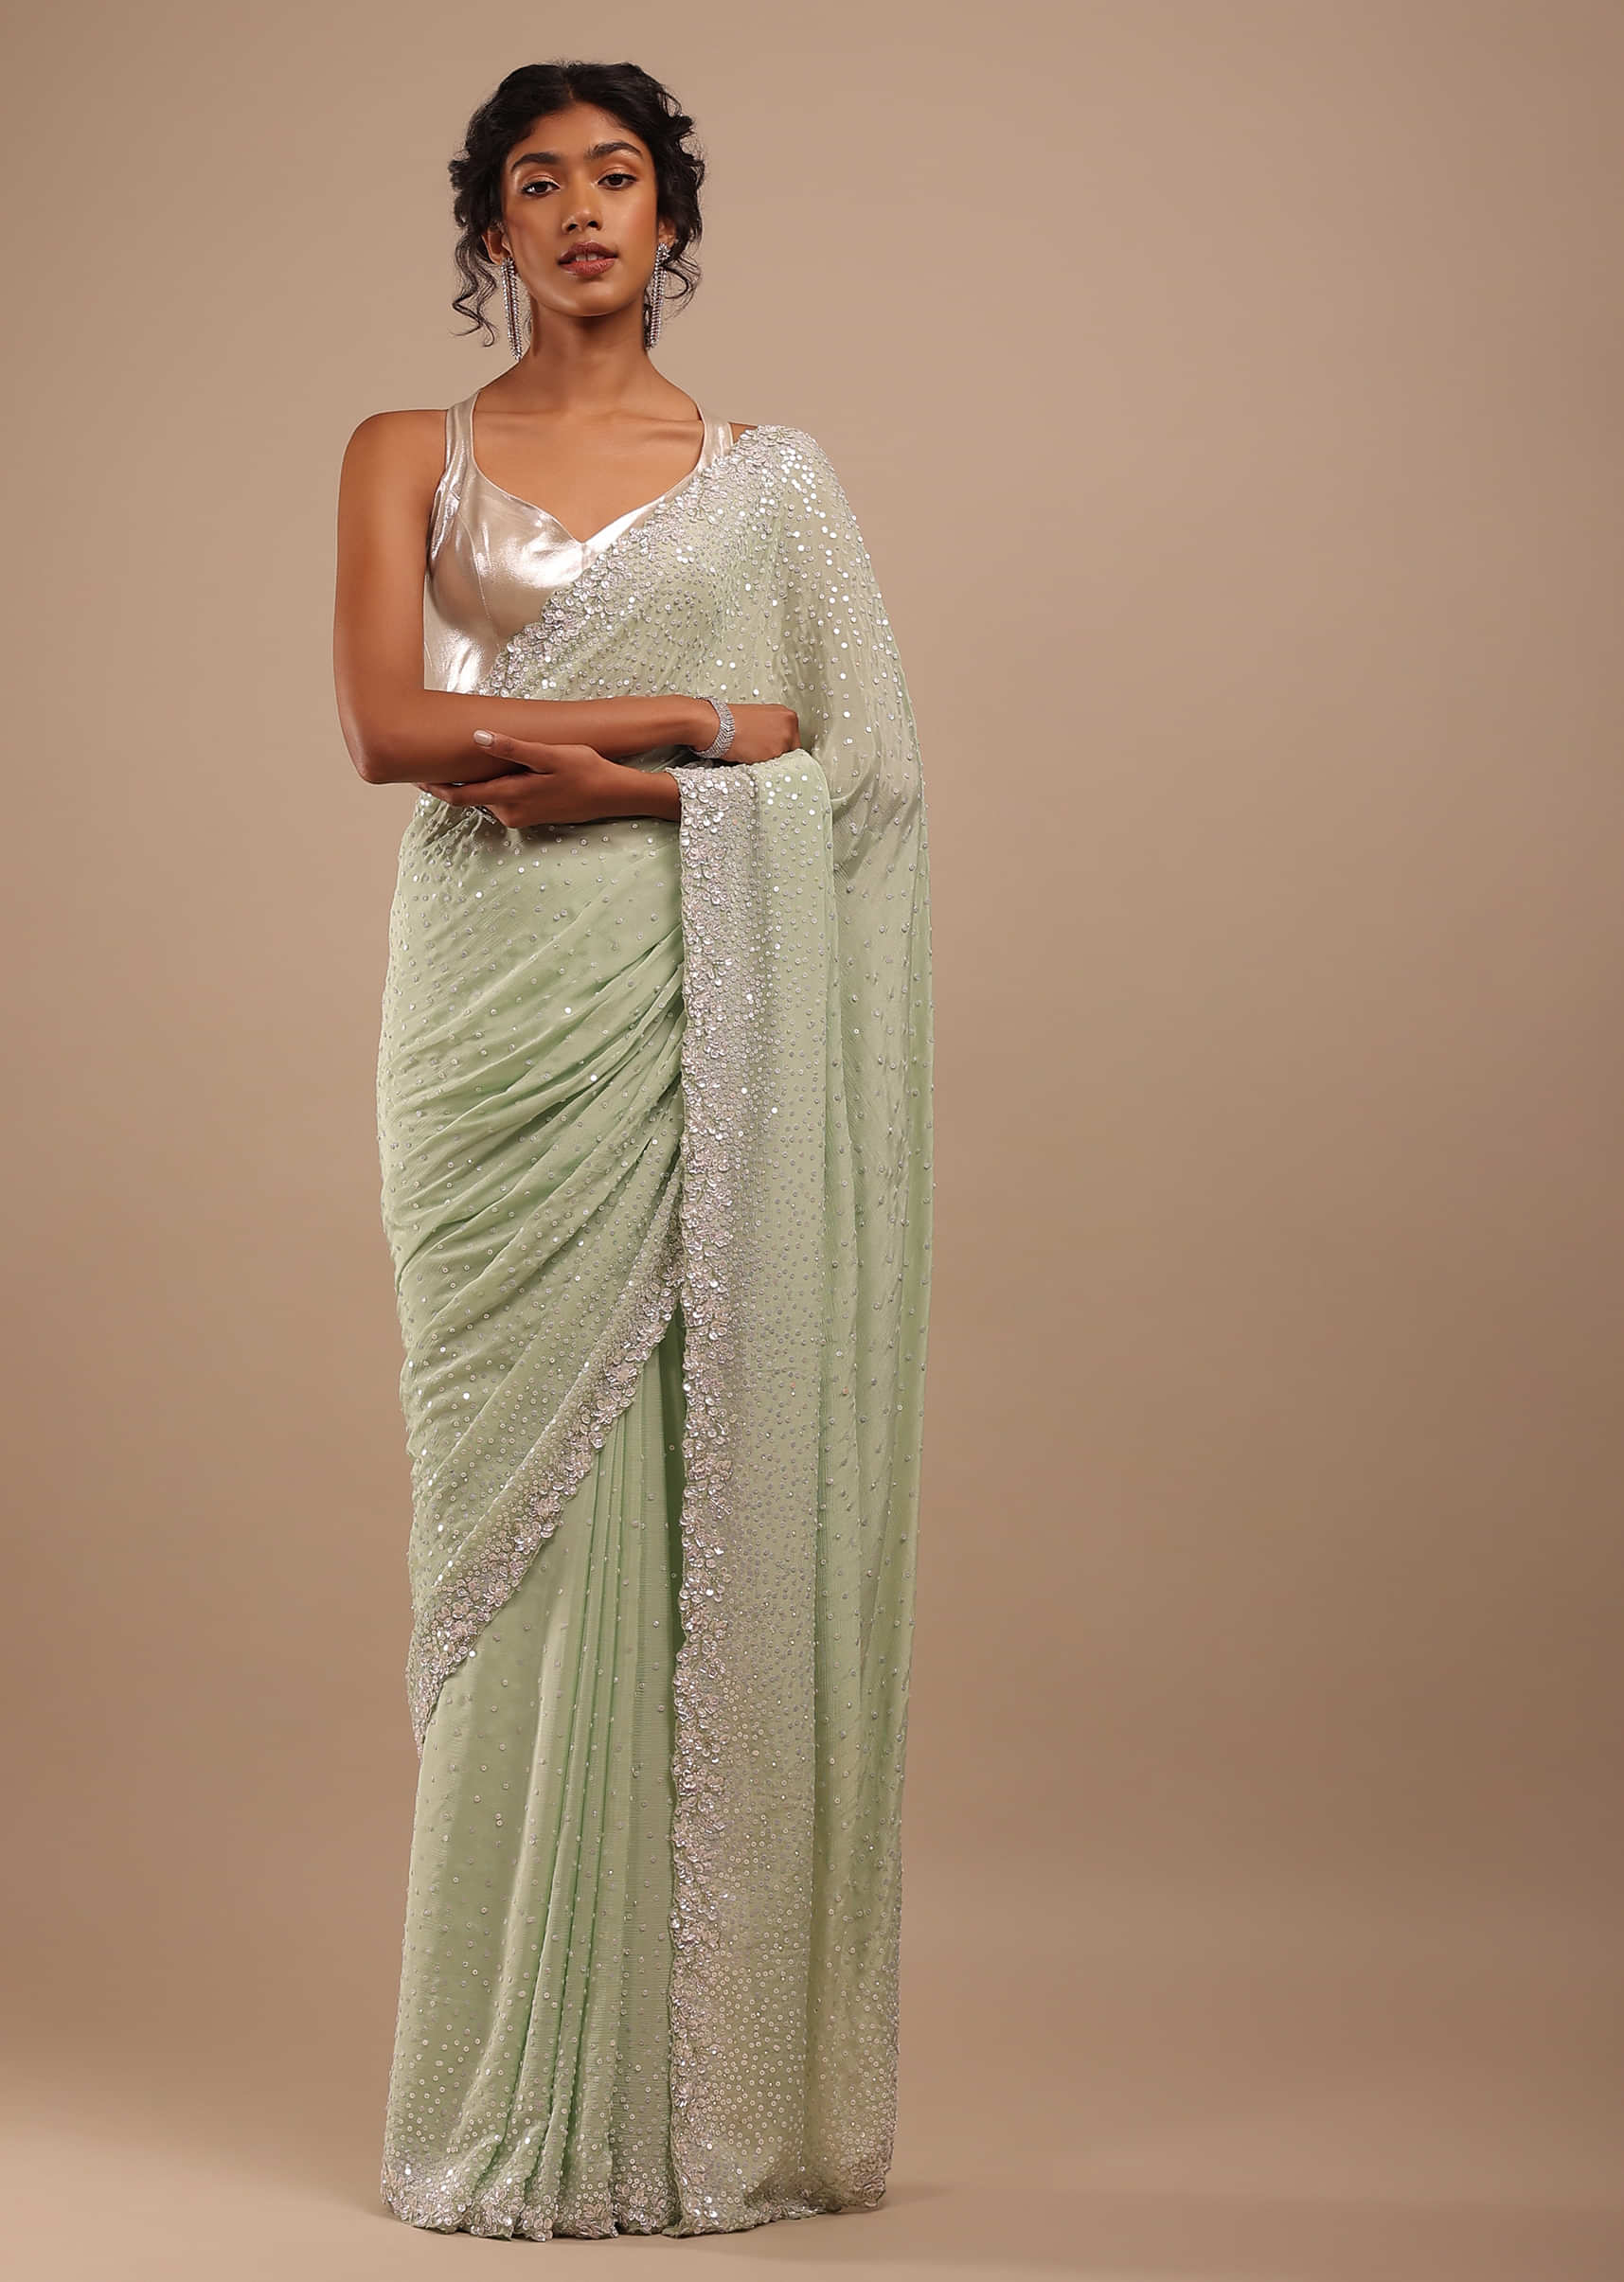 White Chiffon Saree - Bollywood Fashion Australia